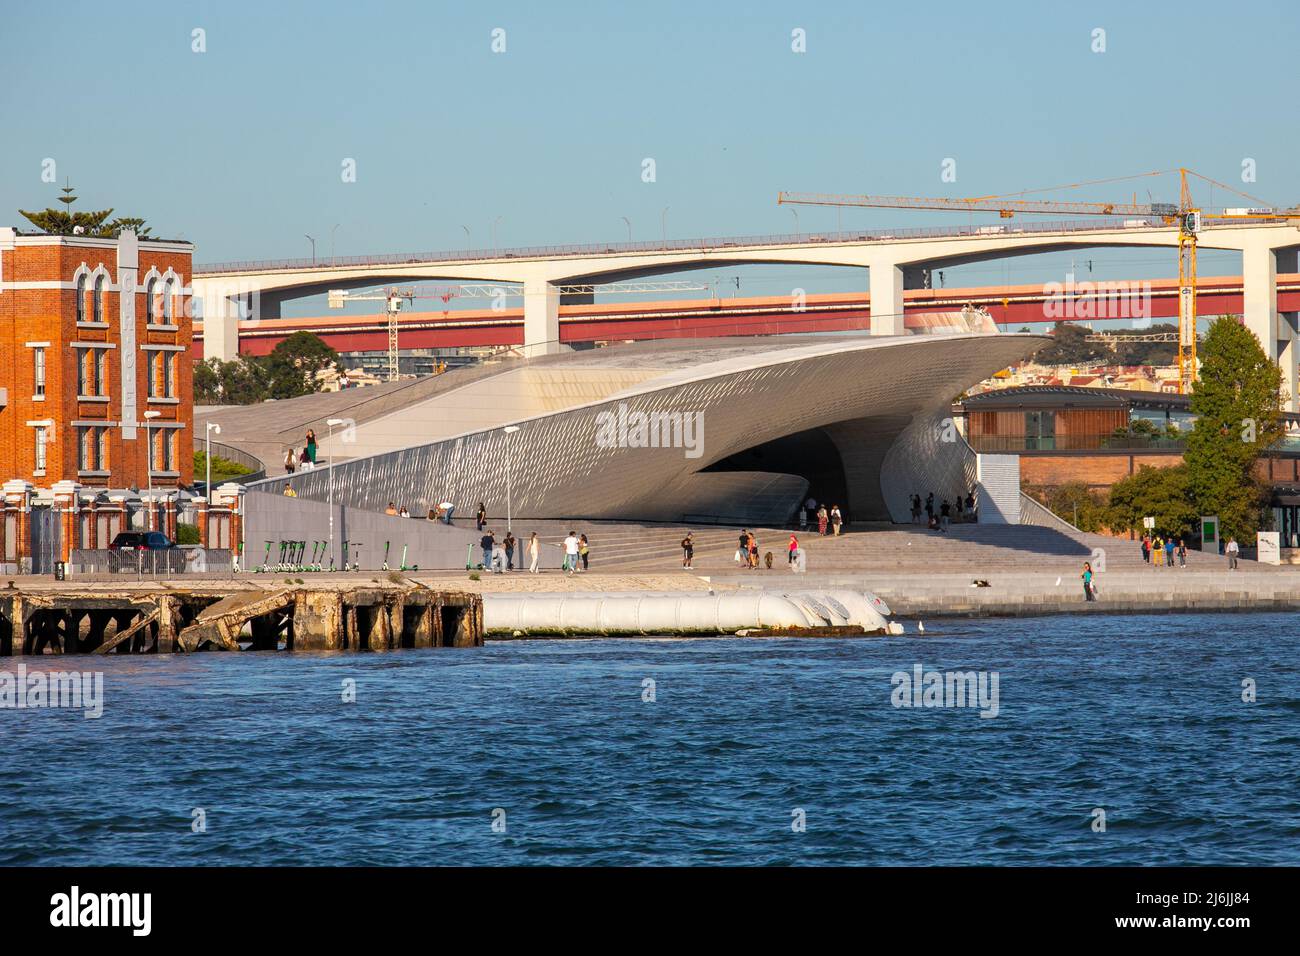 MAAT - Museo di Arte, Architettura e Tecnologia, Lisbona, Portogallo Foto Stock